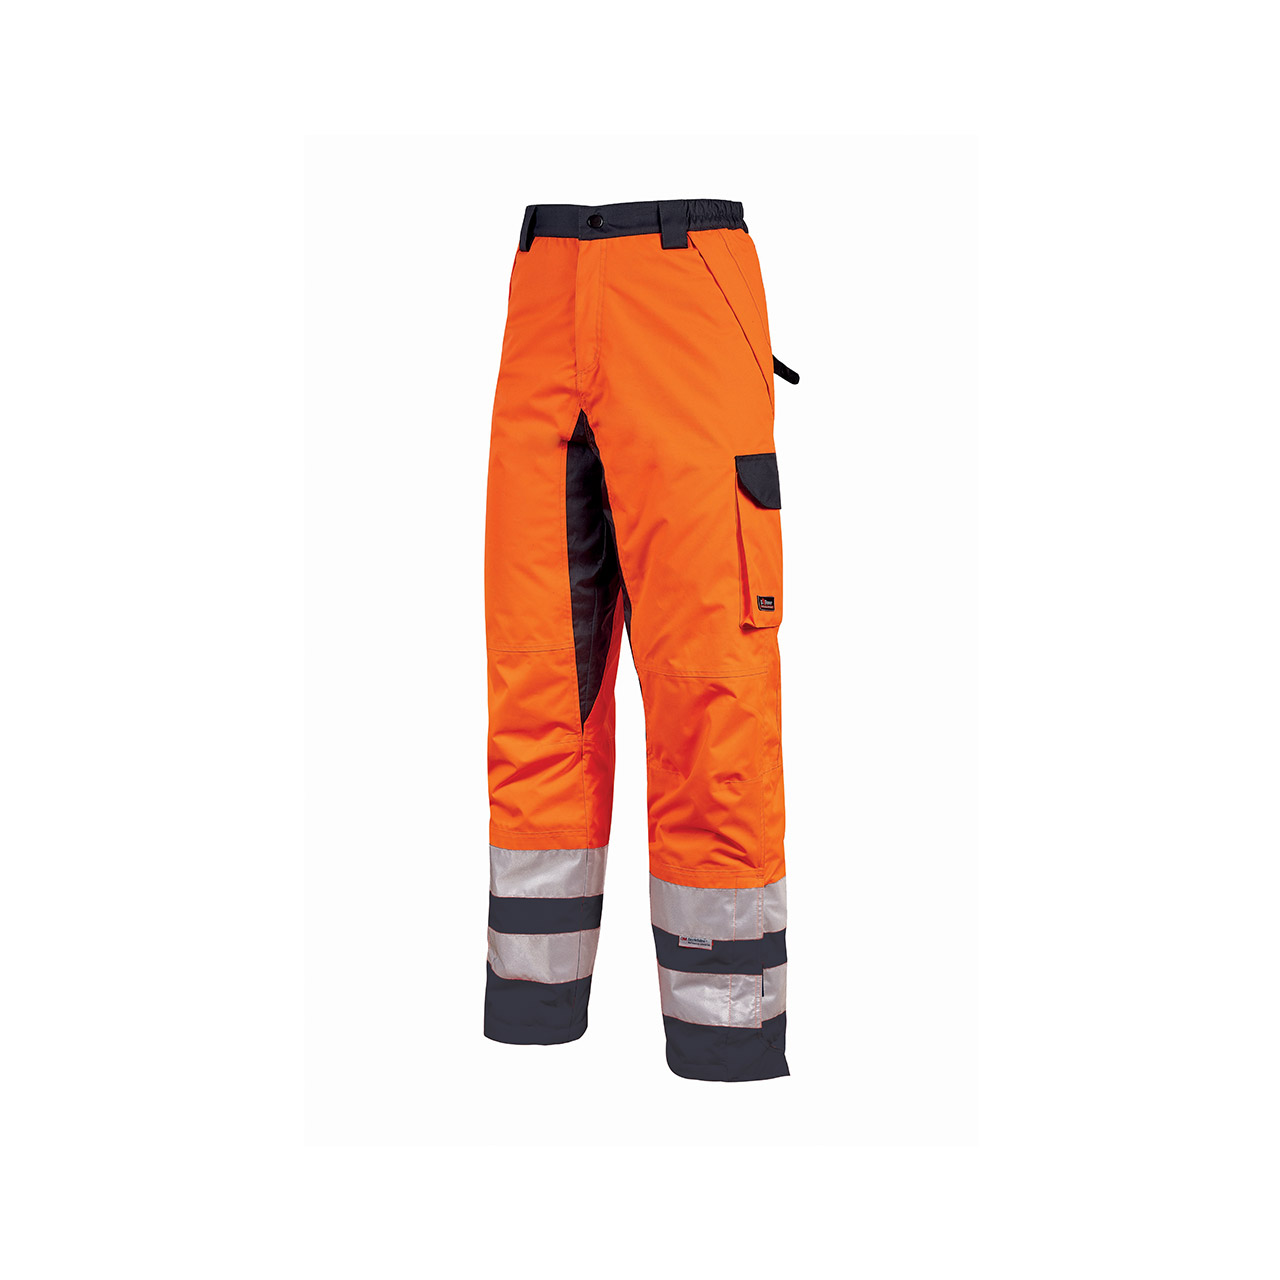 pantalone da lavoro upower modello subu colore orange fluo